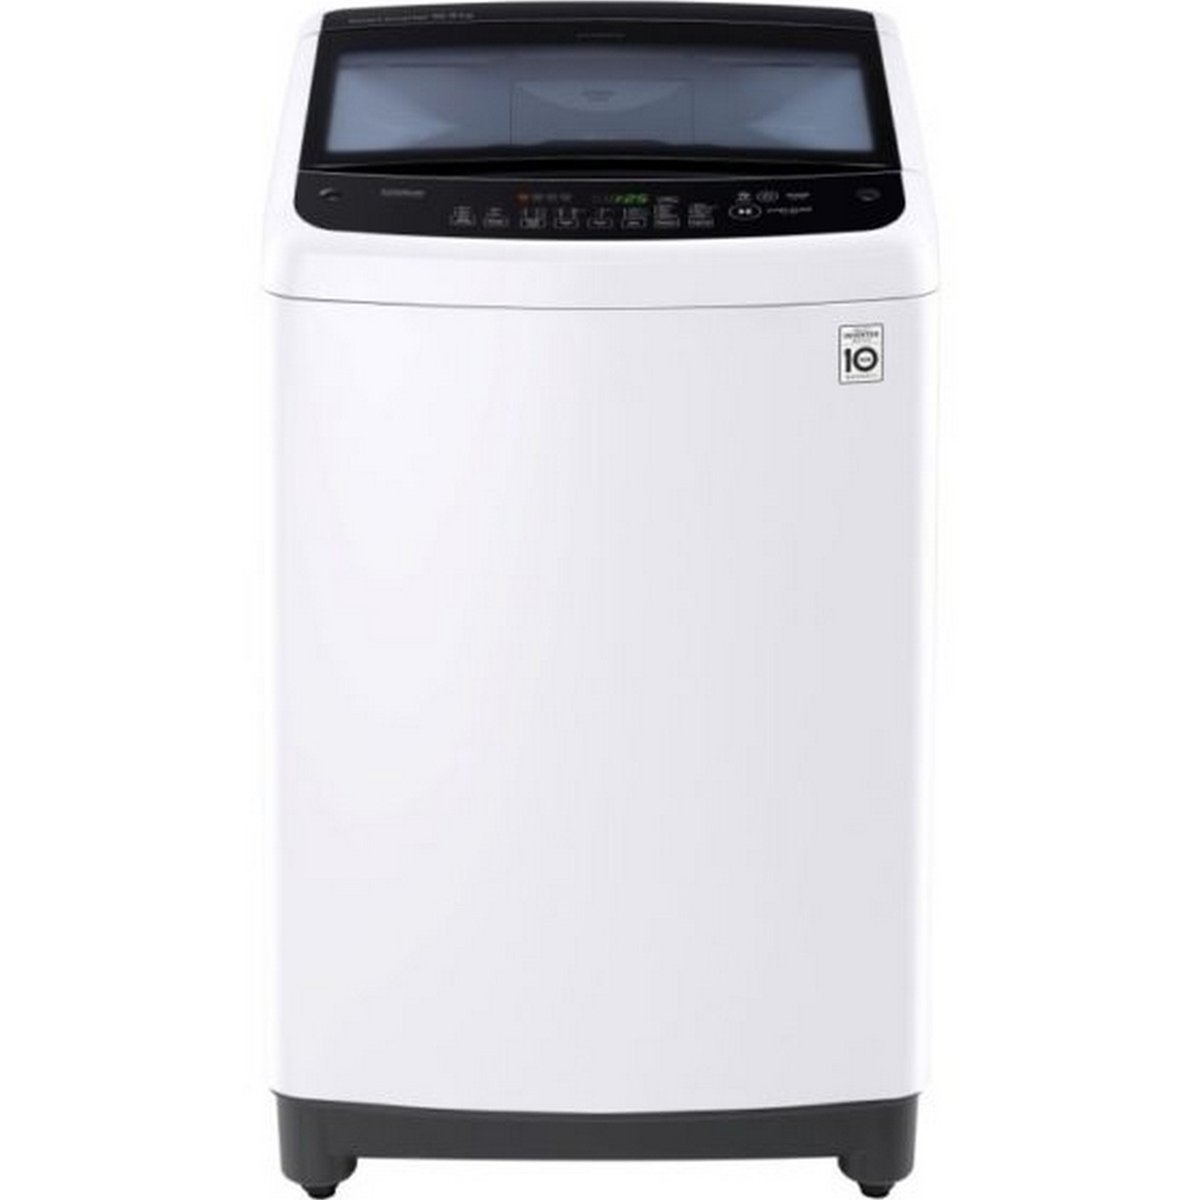 LG Top Load Washing Machine T9588NEHPA 9Kg